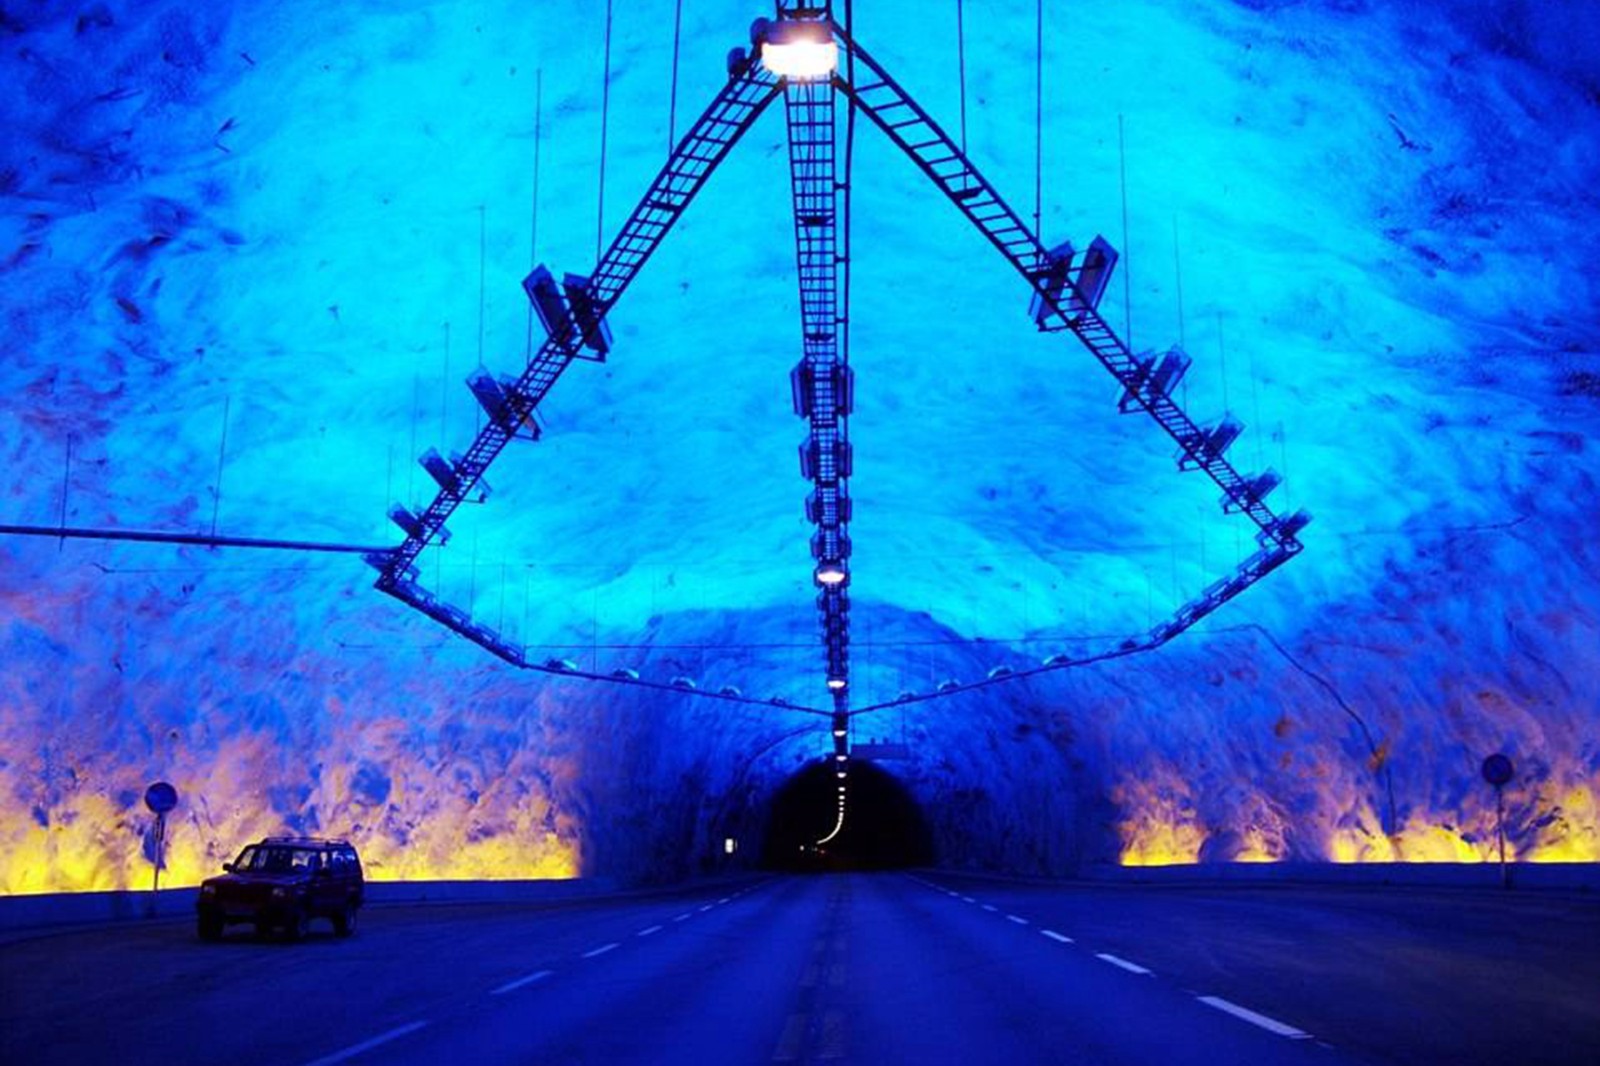 1:挪威:洛达尔隧道 诺达尔隧道时世界上最长公路隧道,长24